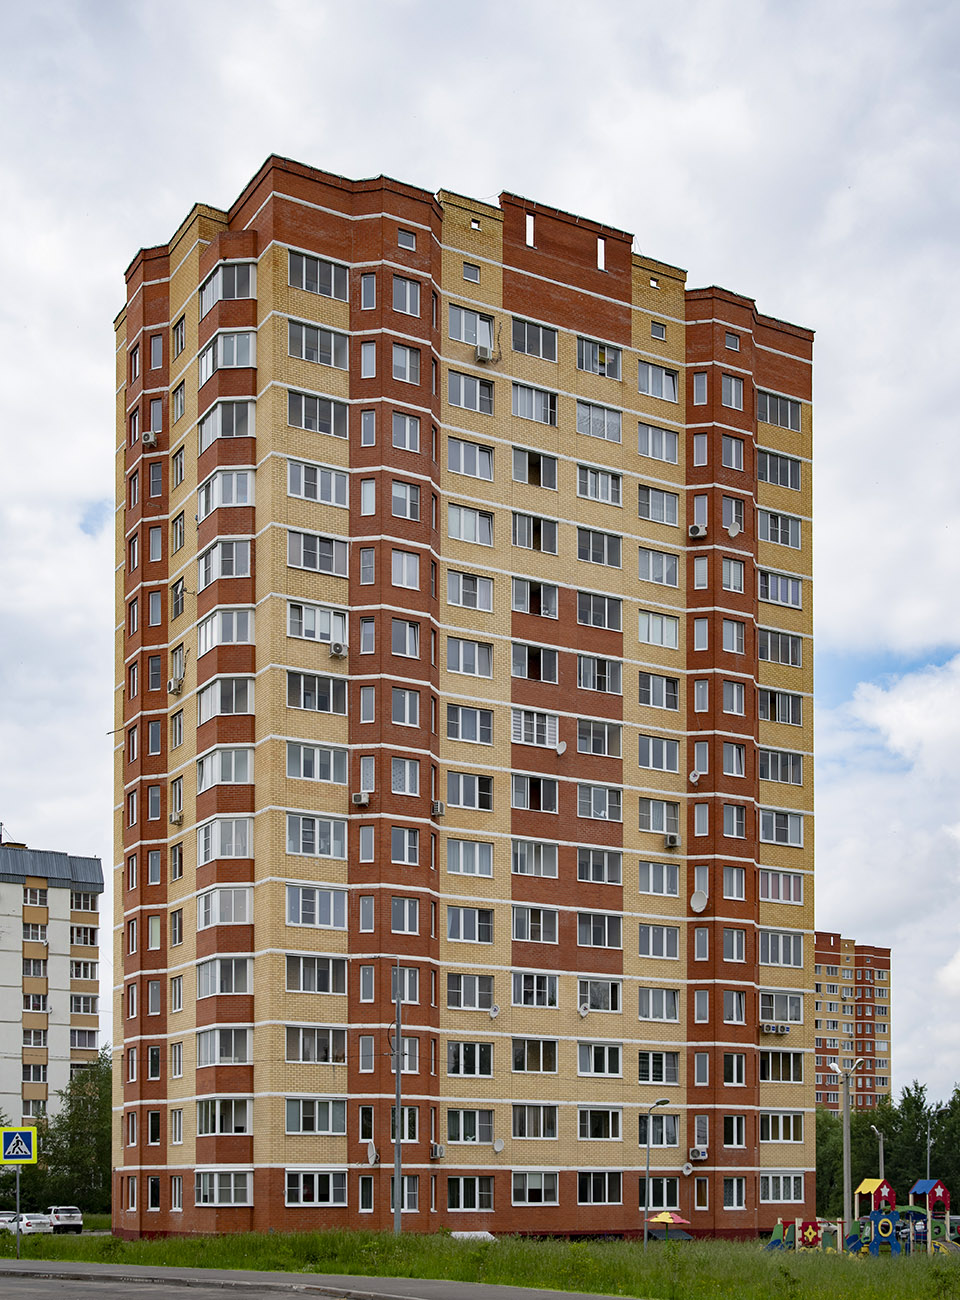 Settlement Voronovskoe, пос. ЛМС, микрорайон Центральный, 35